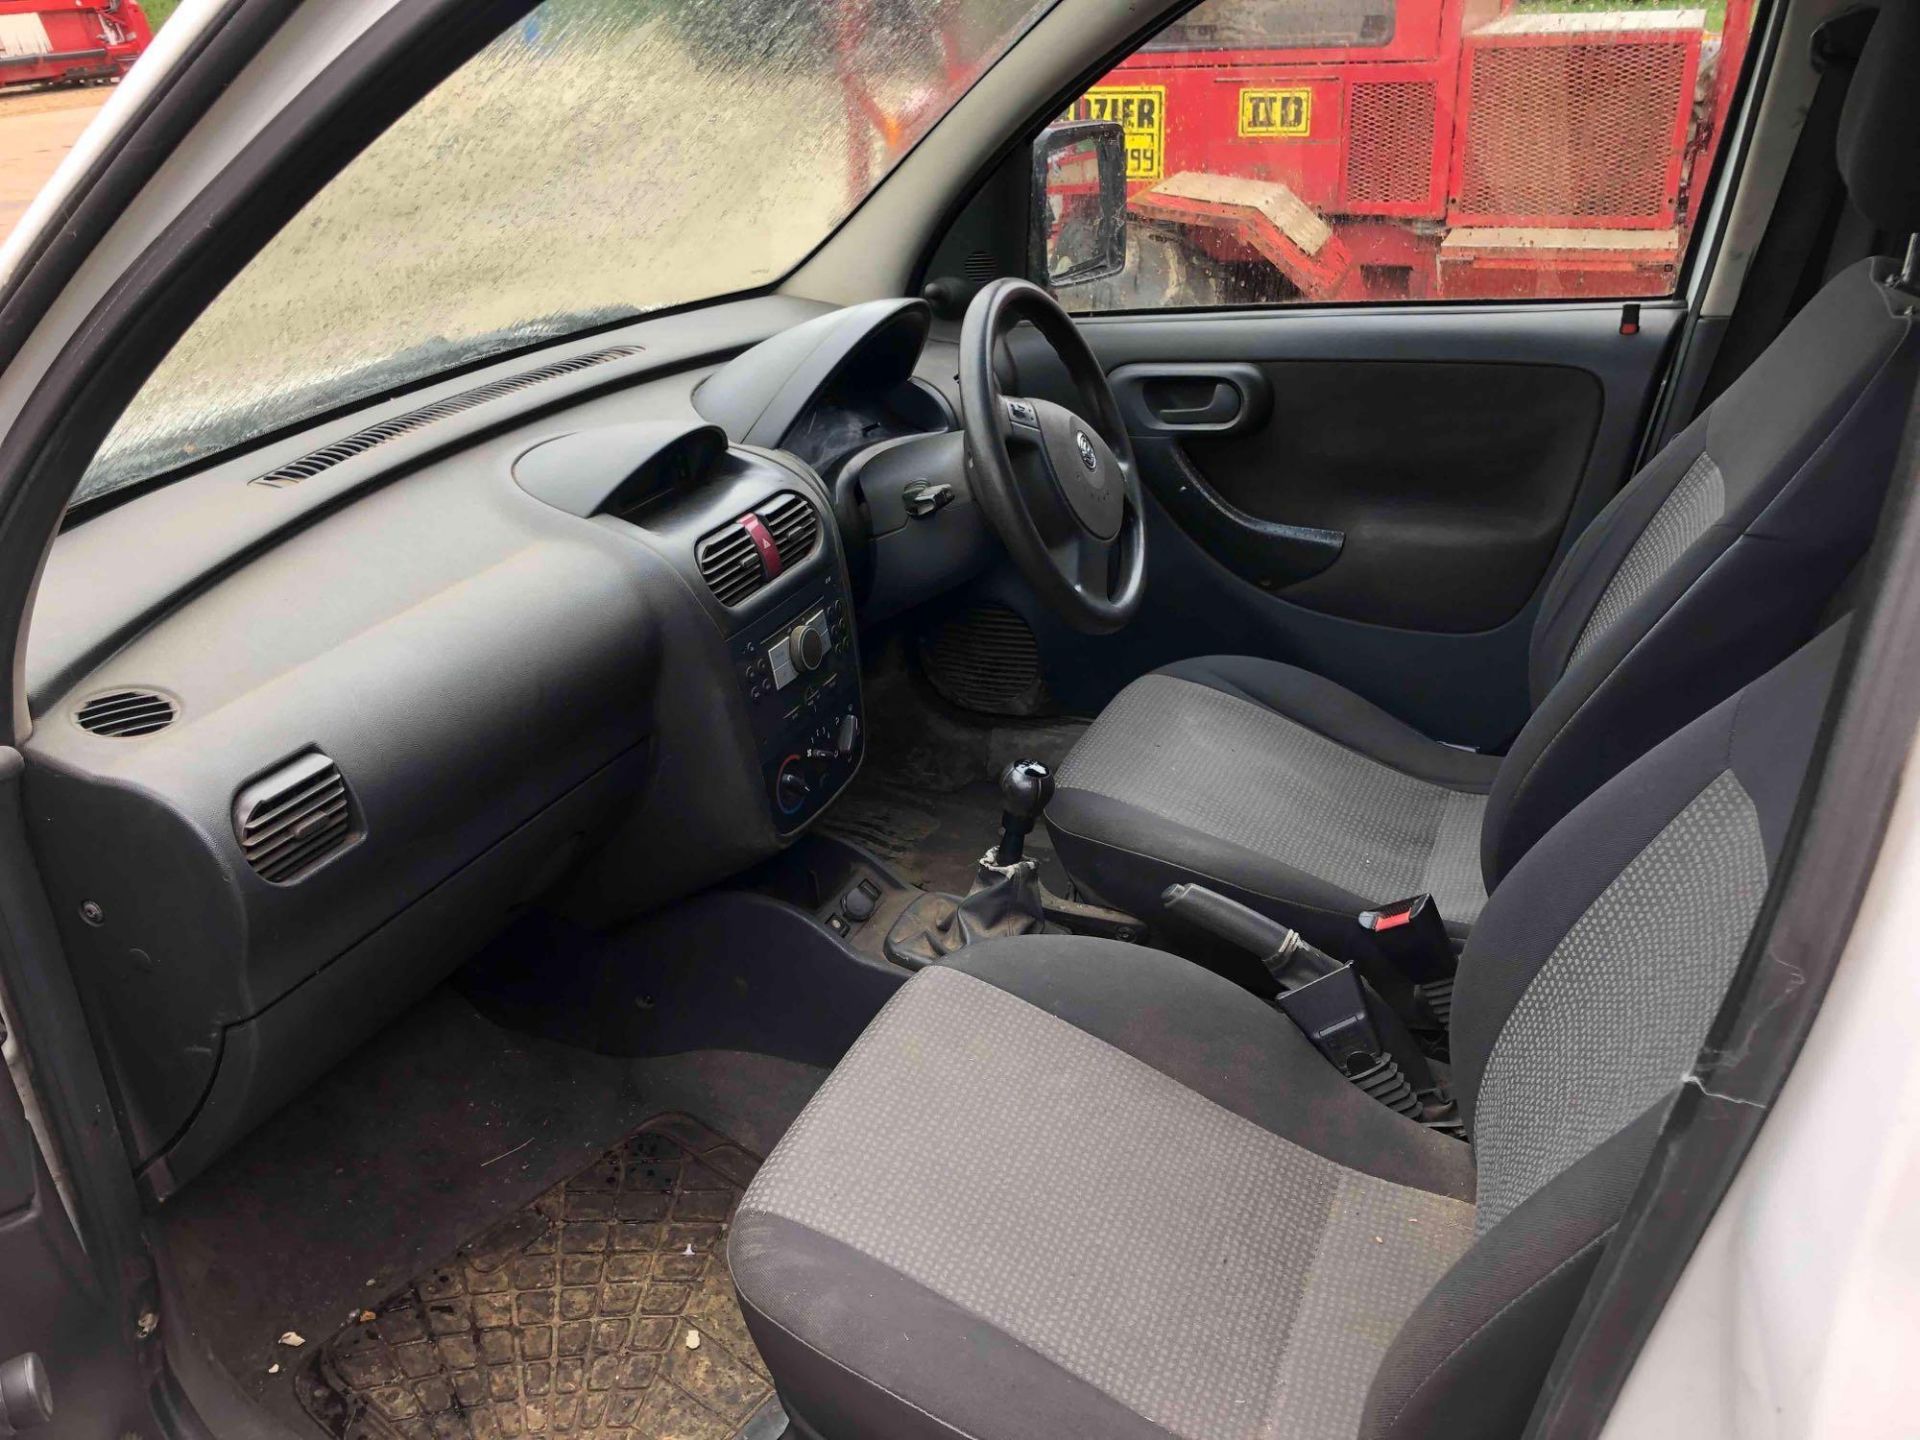 2007 Vauxhall Combo CDTi 2wd diesel van, manual, roof rack and internal racking on 185/60R15 wheels - Bild 18 aus 18